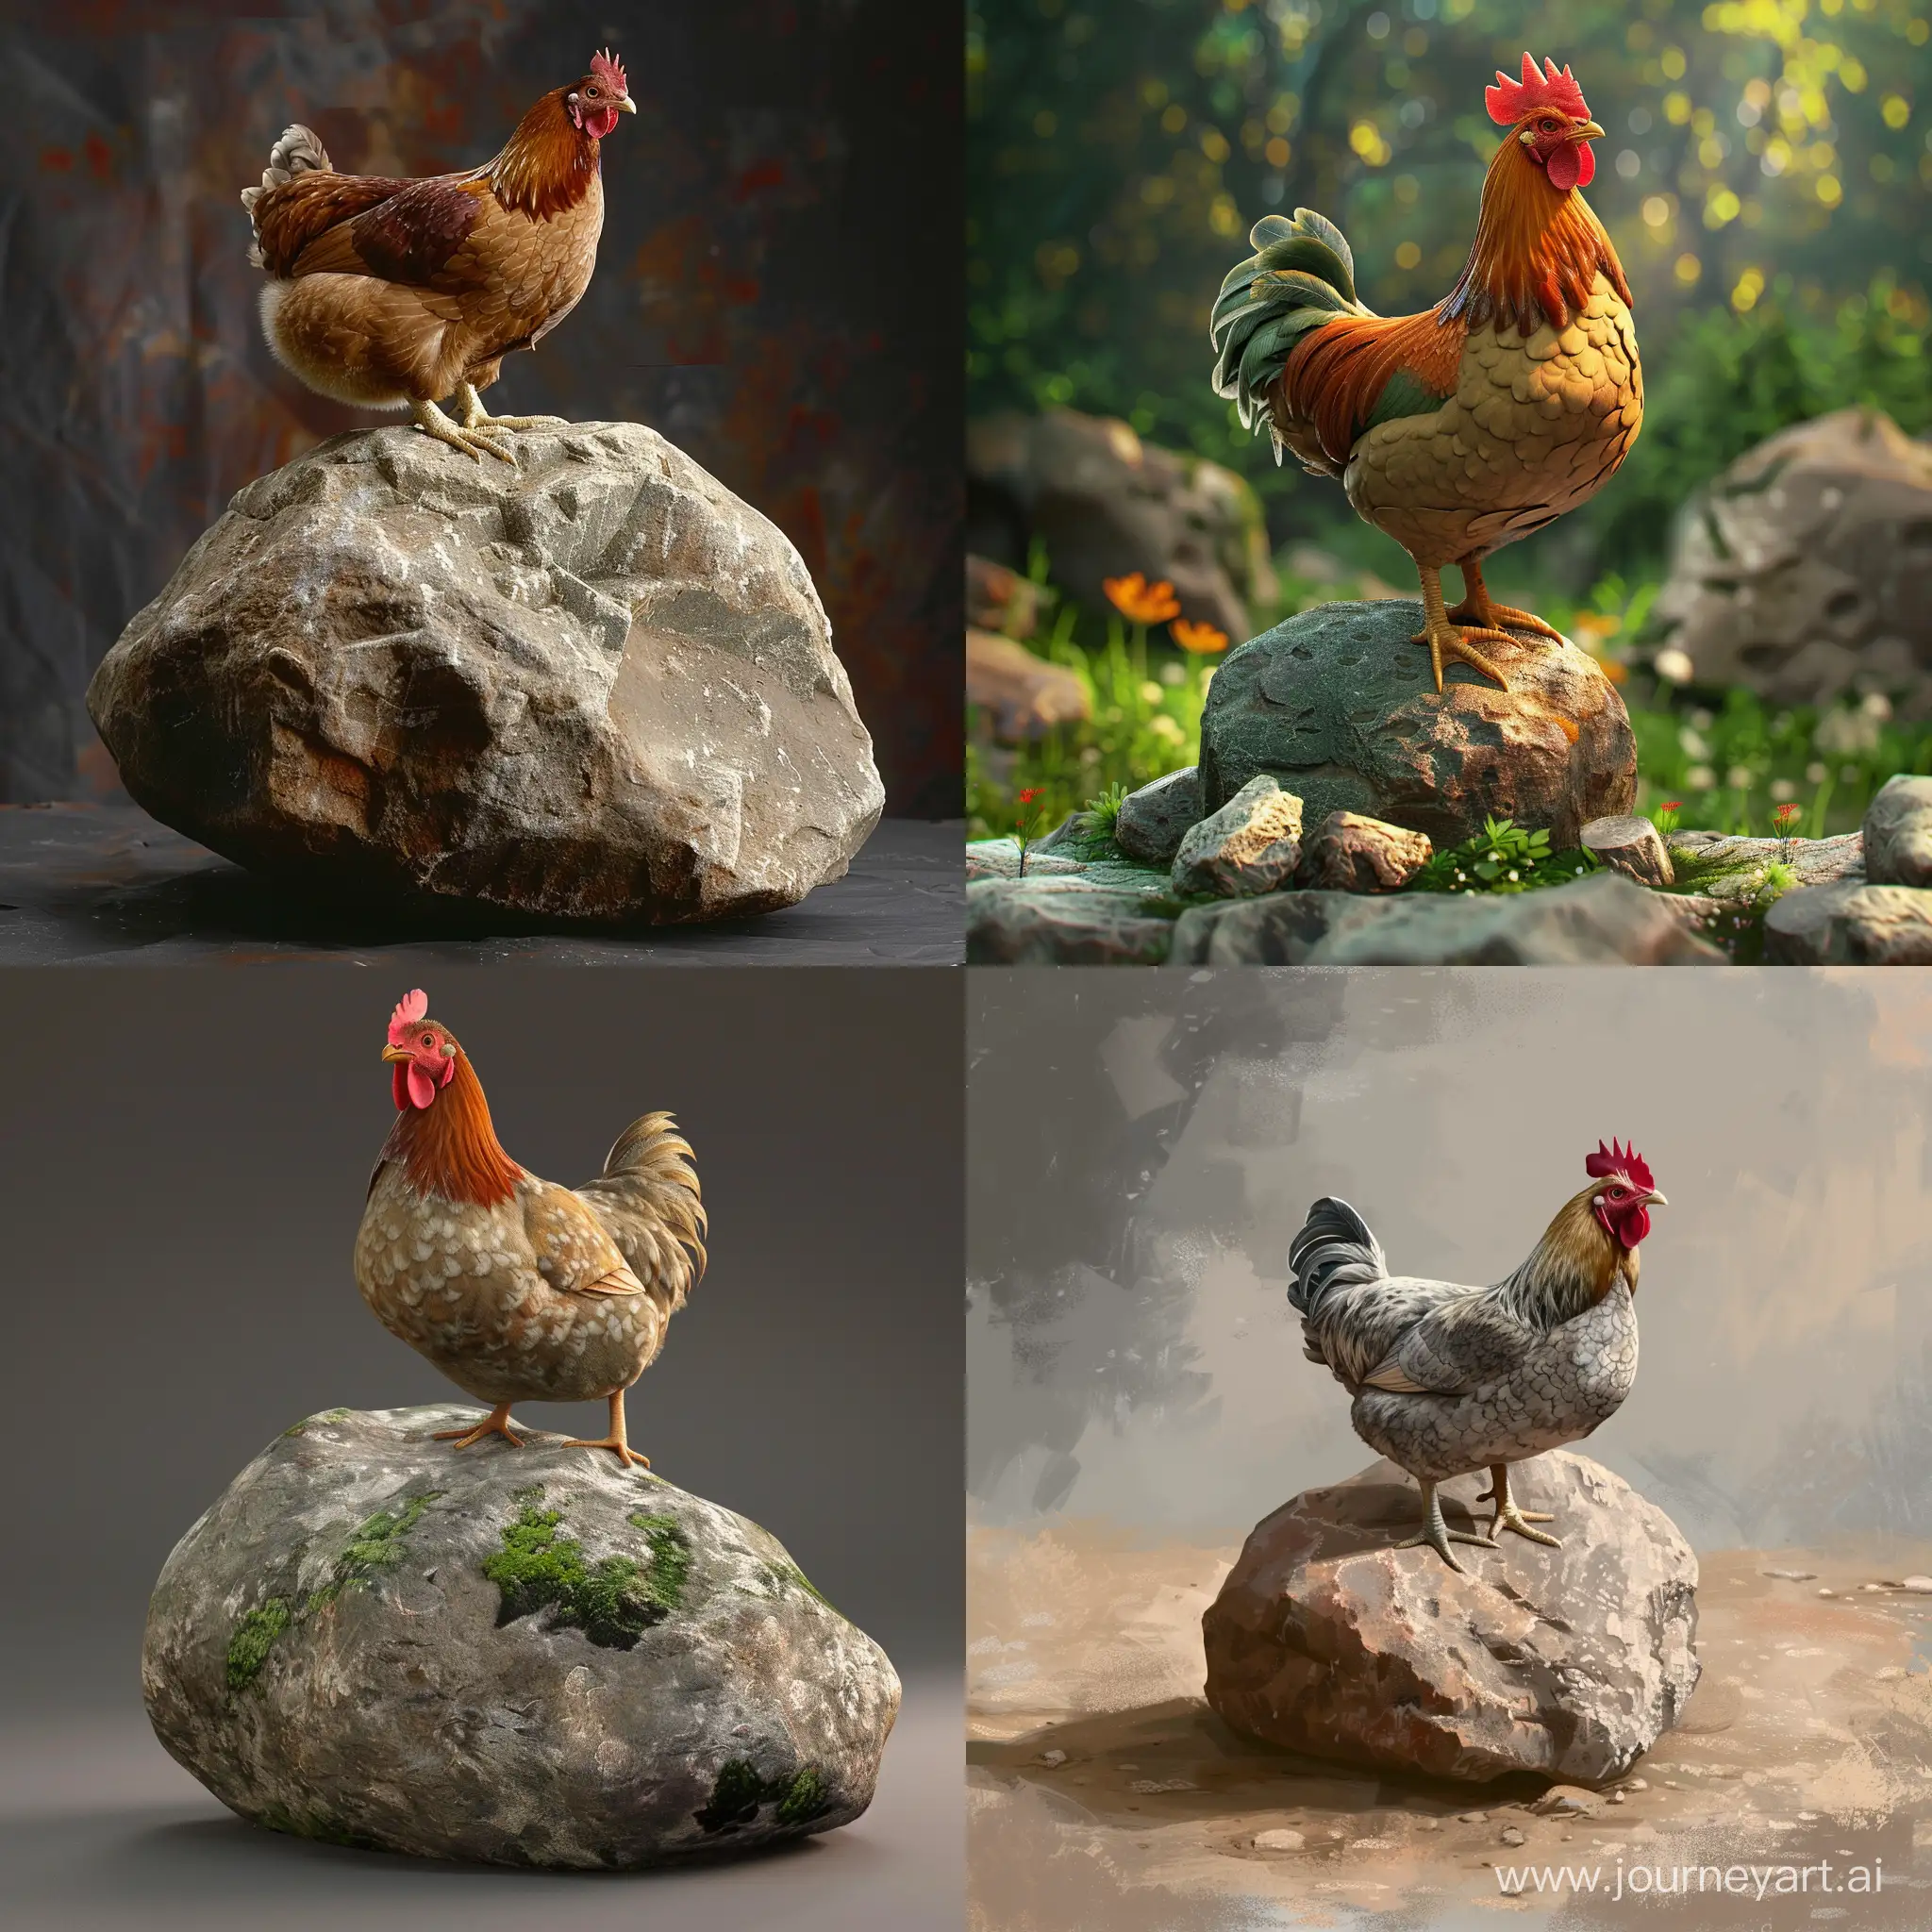 Create an image of a chicken rock bamd